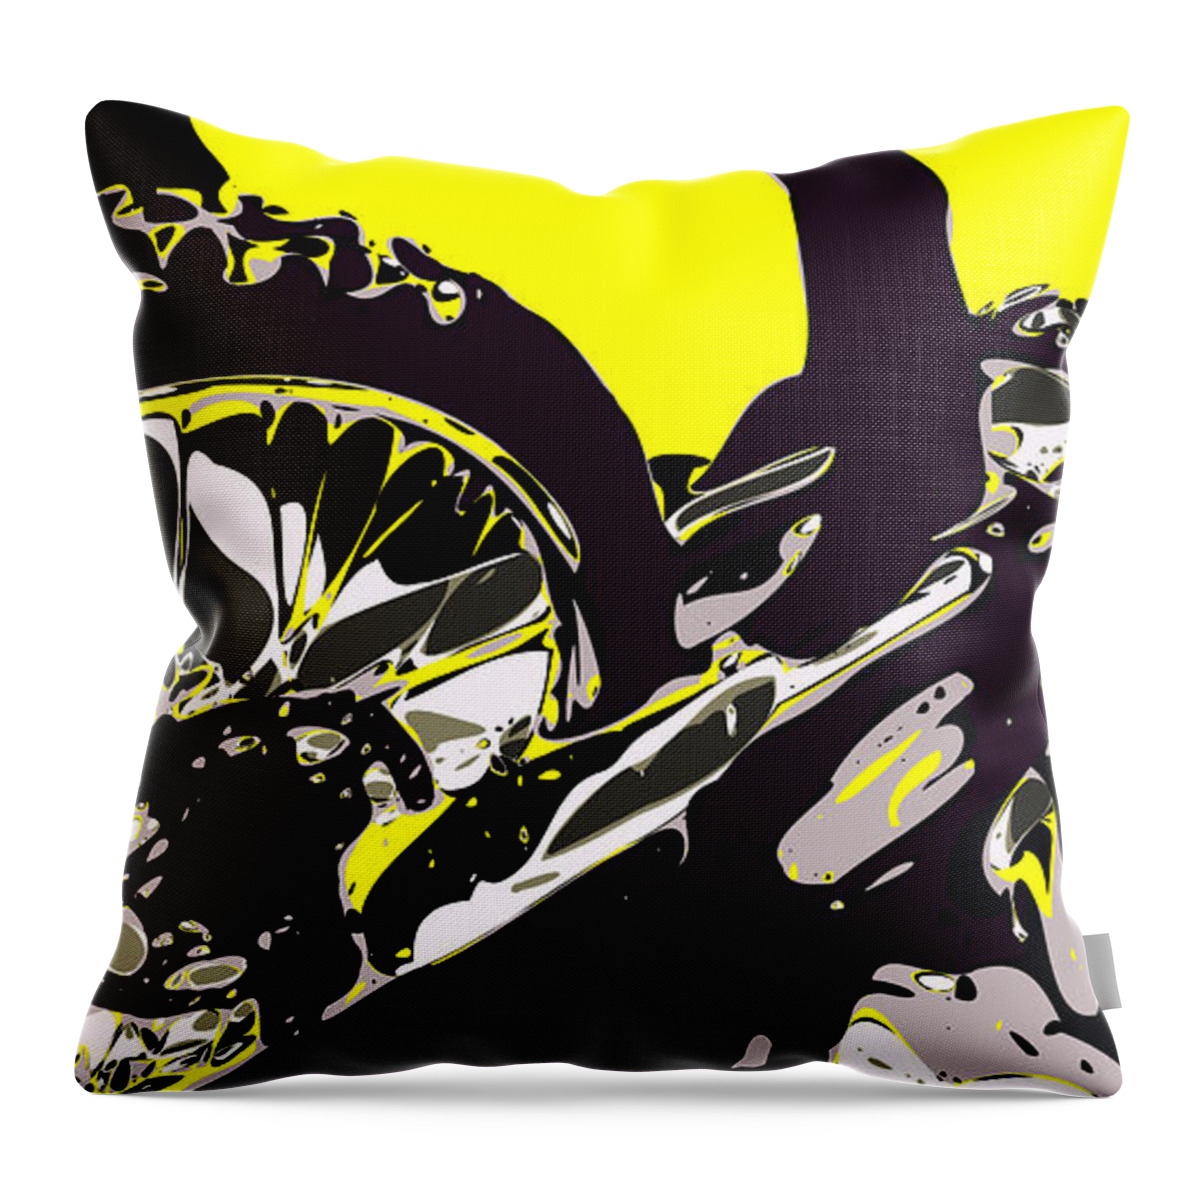 Motocross Throw Pillow featuring the digital art Motocross by Chris Butler